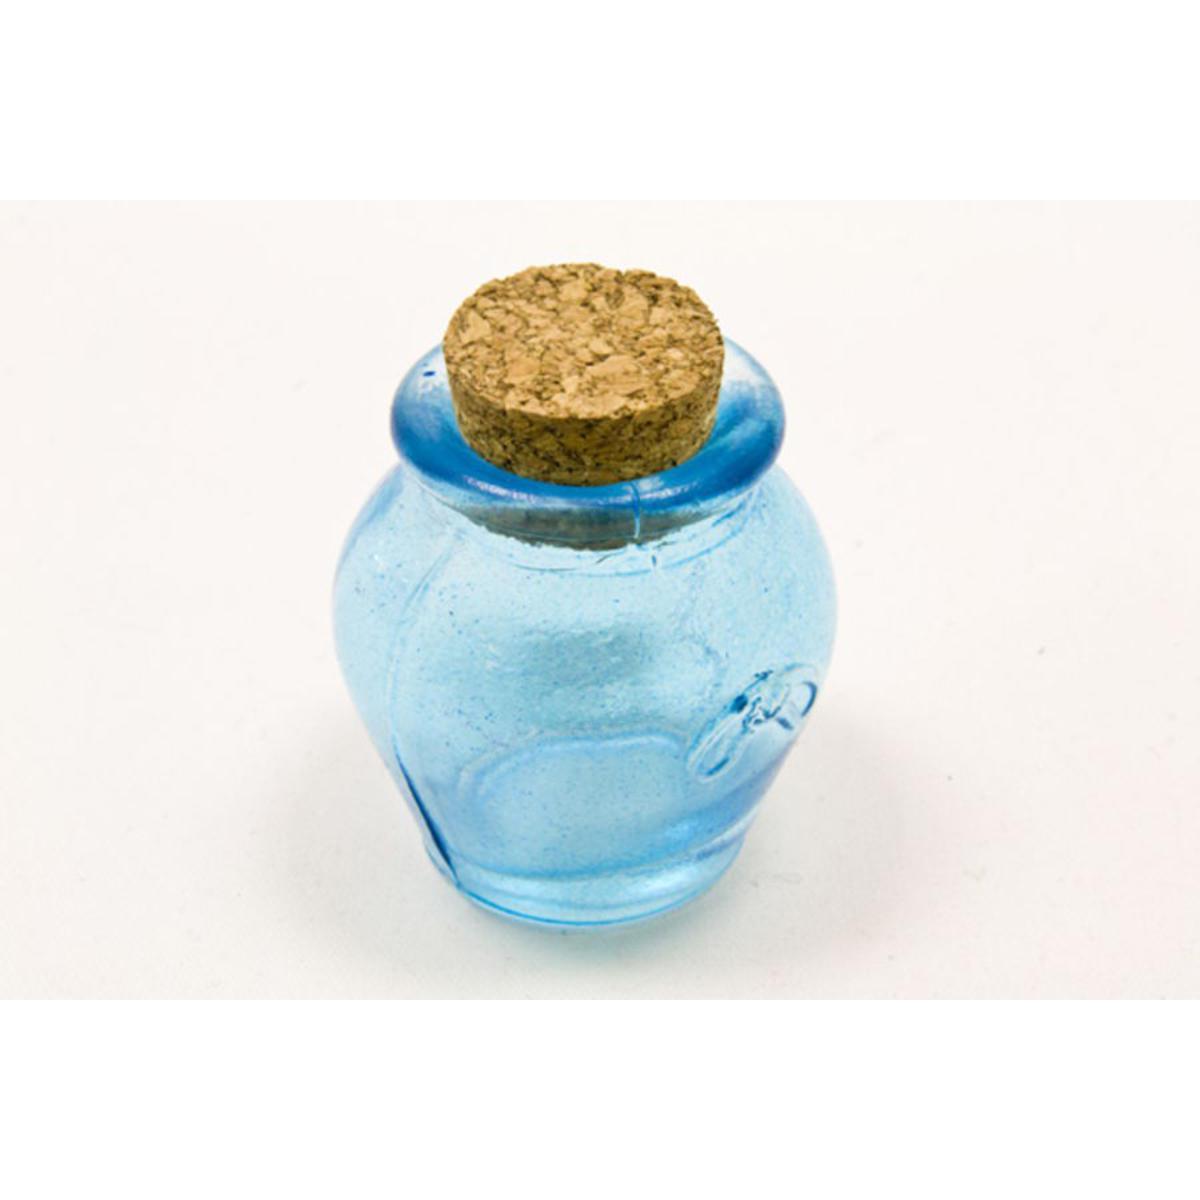 Lot de 4 petits pots ronds en verre - 5,5 x 4,5 cm - Bleu turquoise